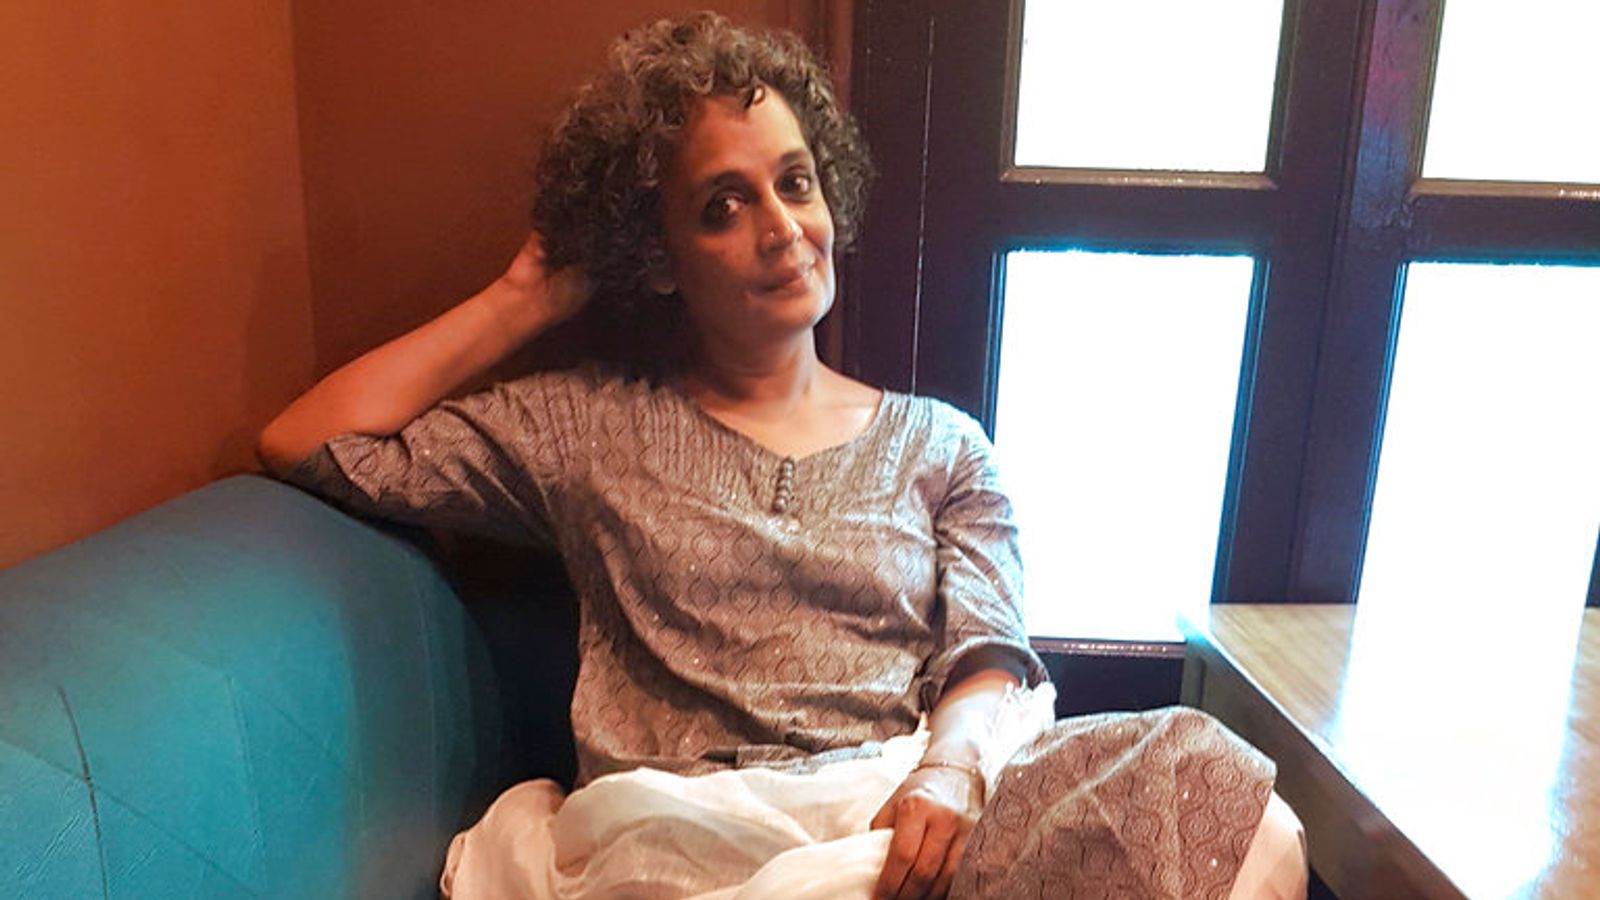 L’auteur Arundhati Roy, lauréat du prix Booker, sera poursuivi en Inde pour ses commentaires au Cachemire |  Nouvelles du monde